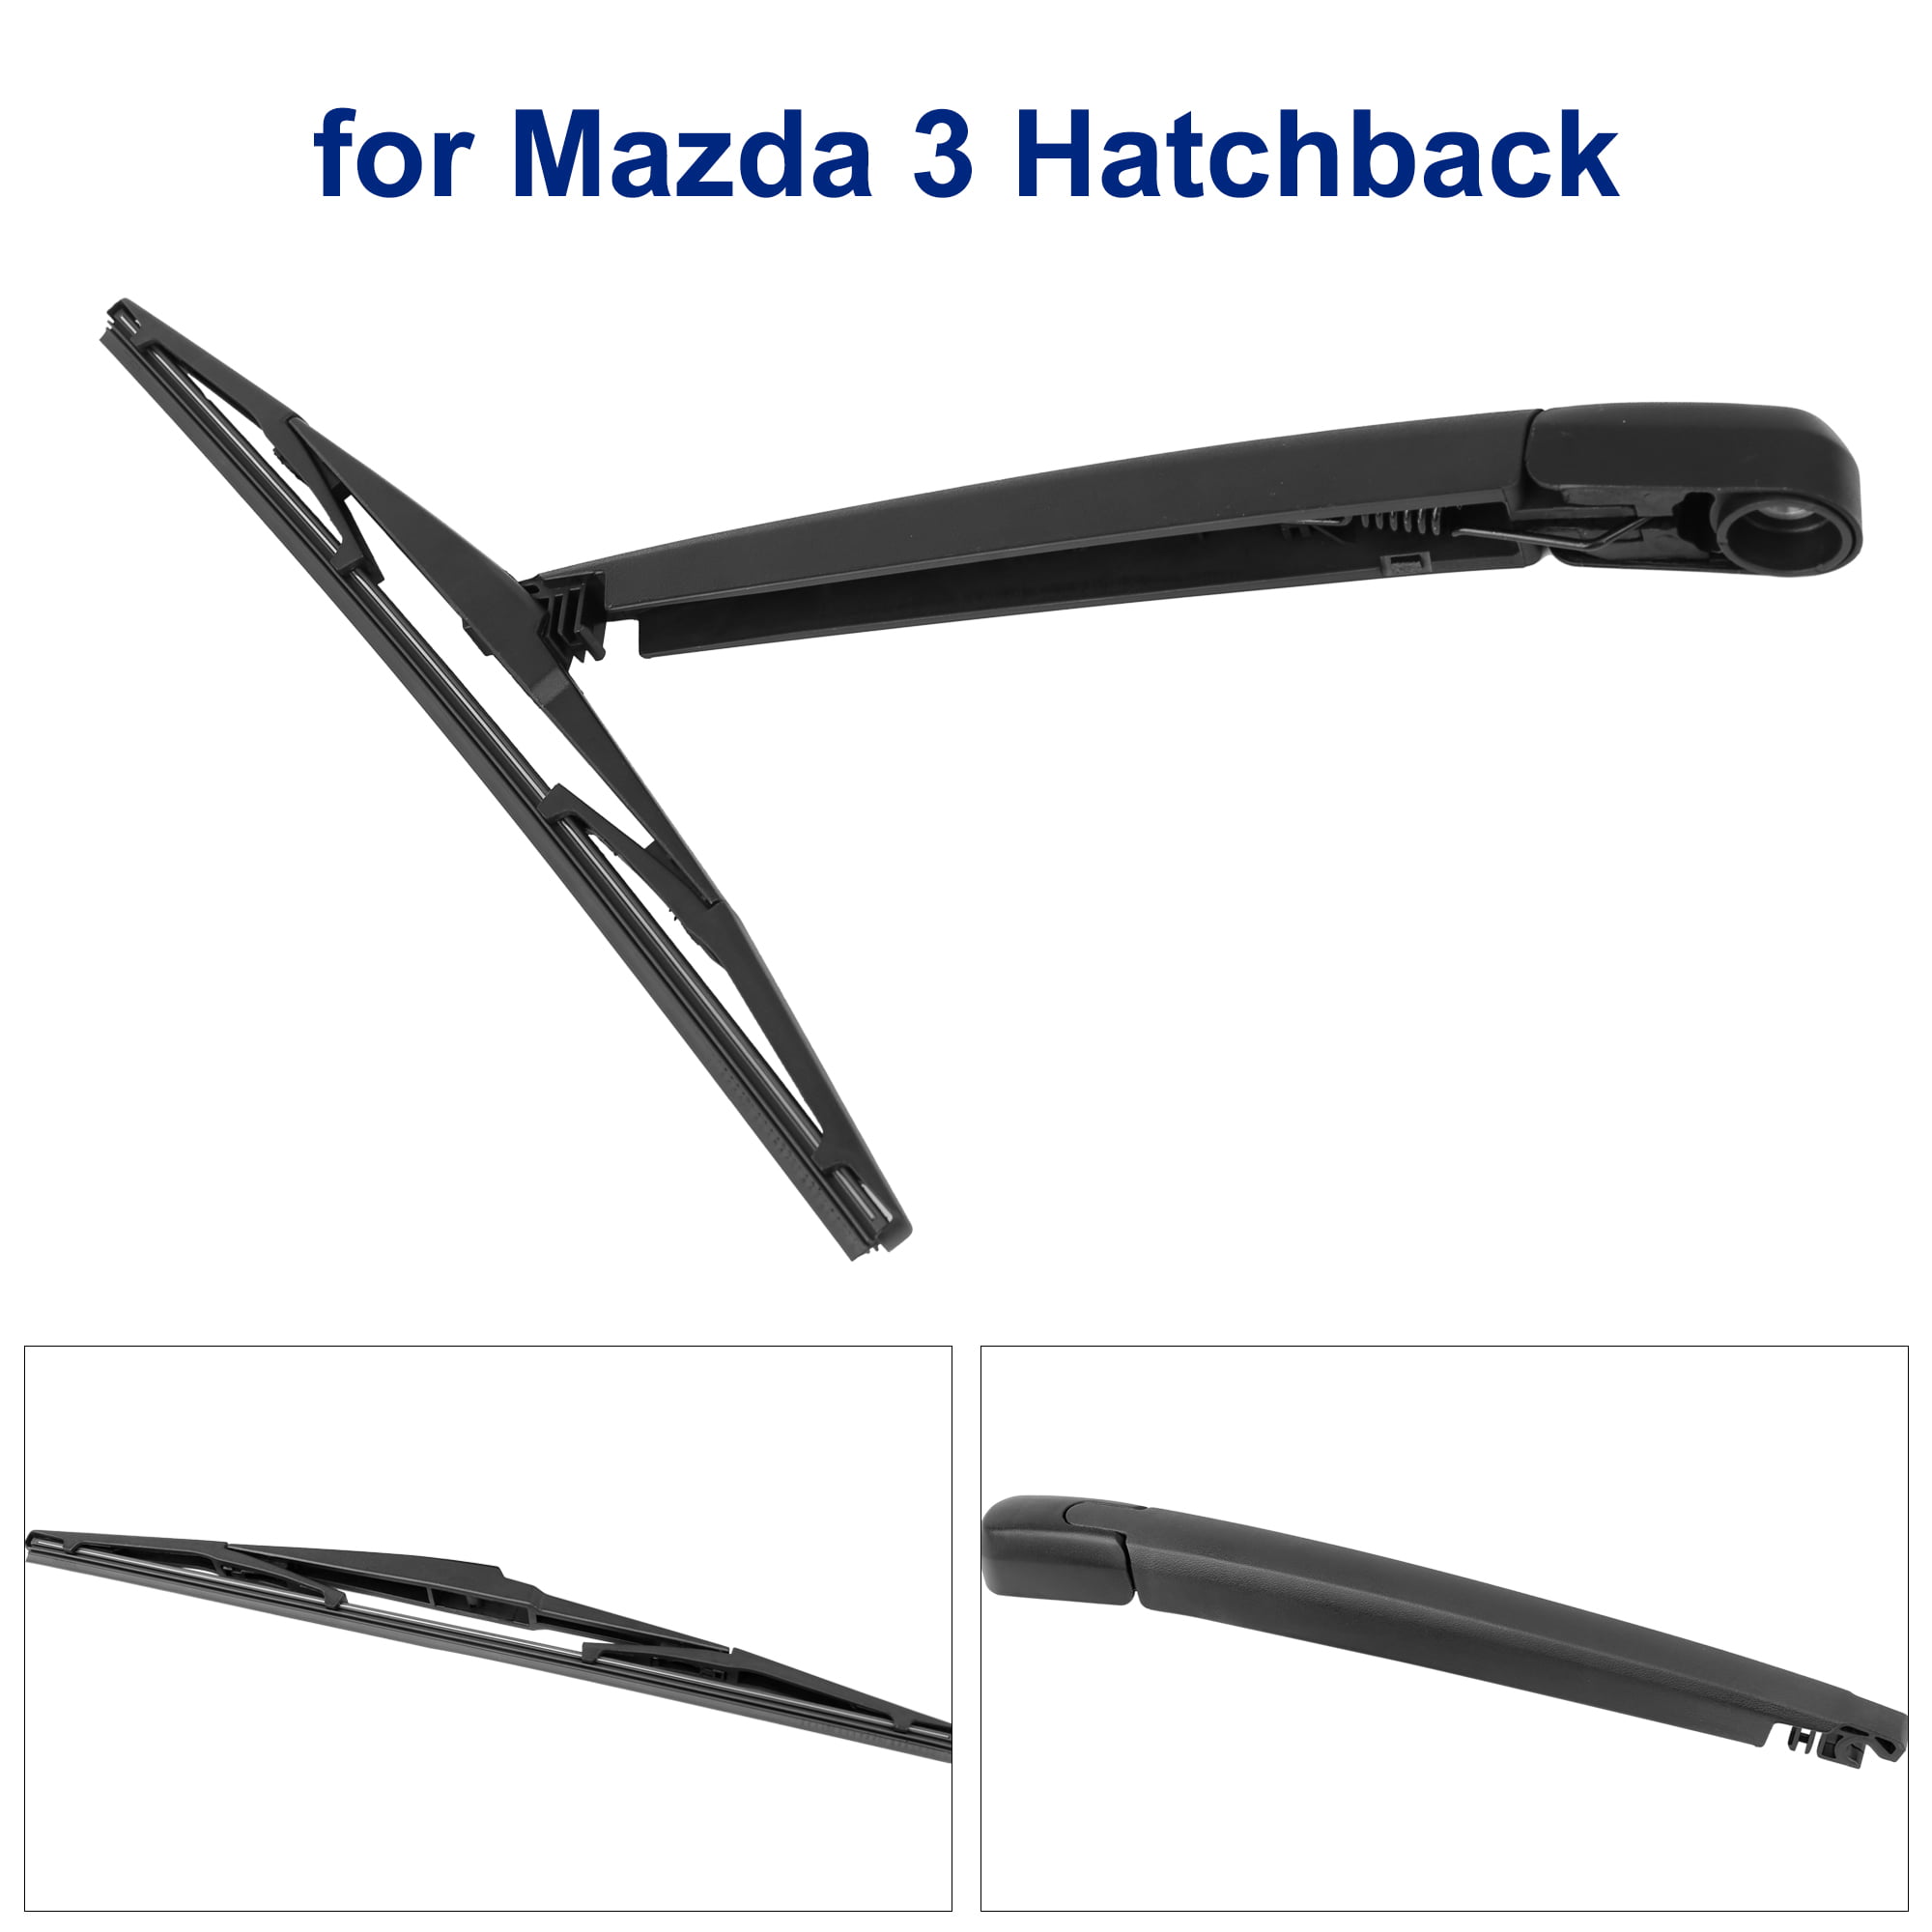 2012 Mazda 3 Hatchback Wiper Blade Size  Ultimate Mazda